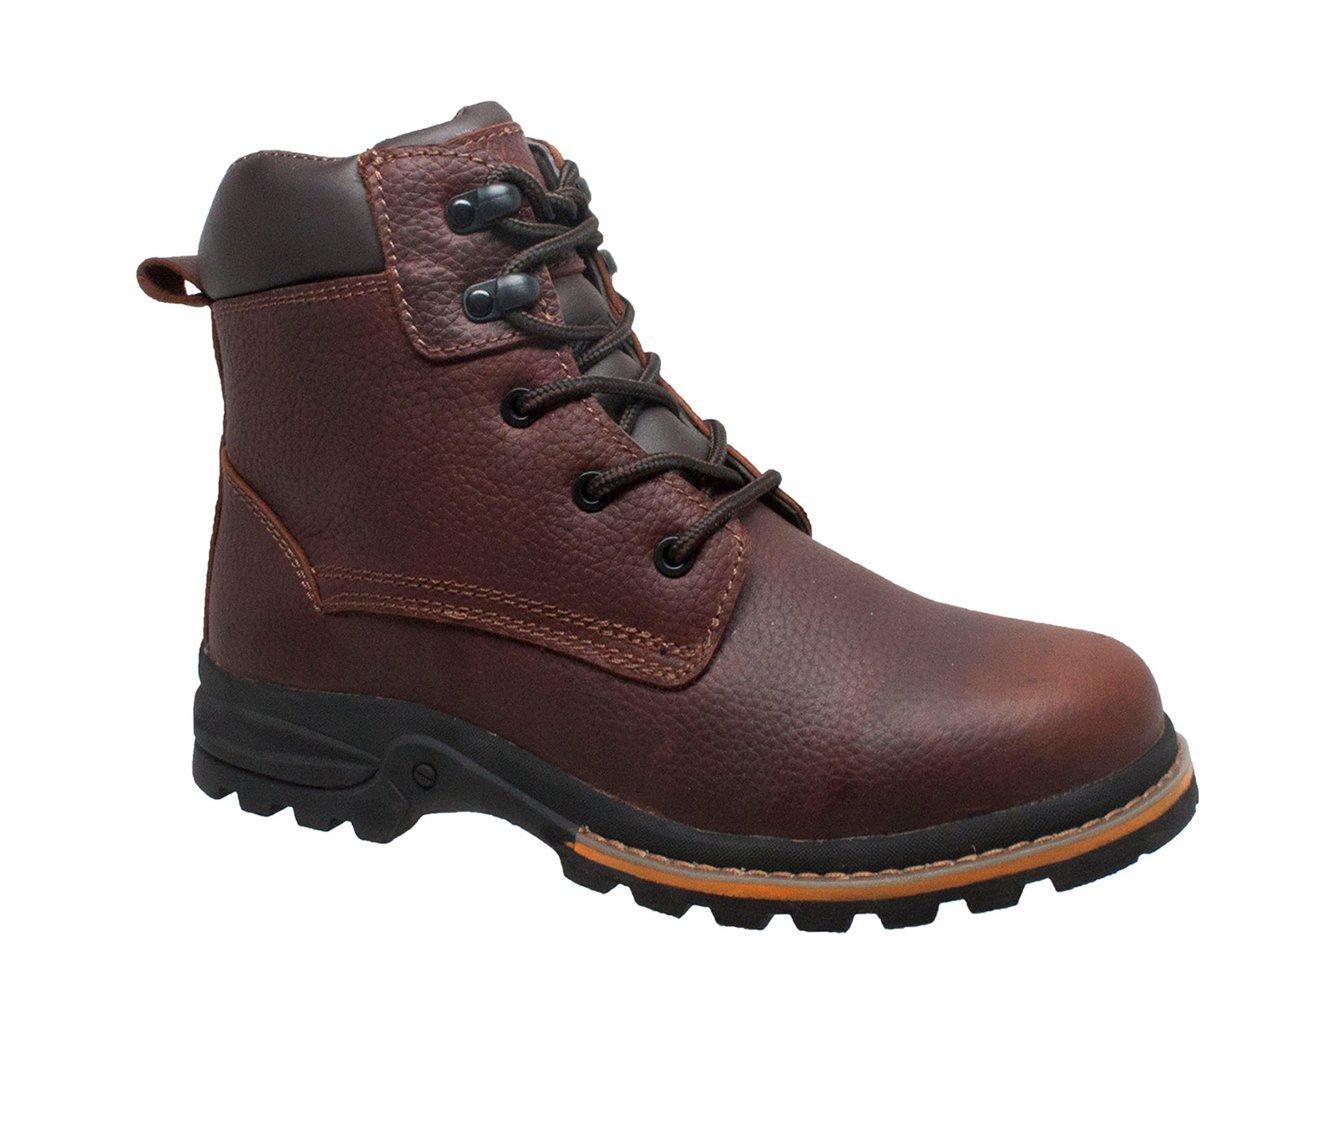 Men's AdTec 6" Work Boots